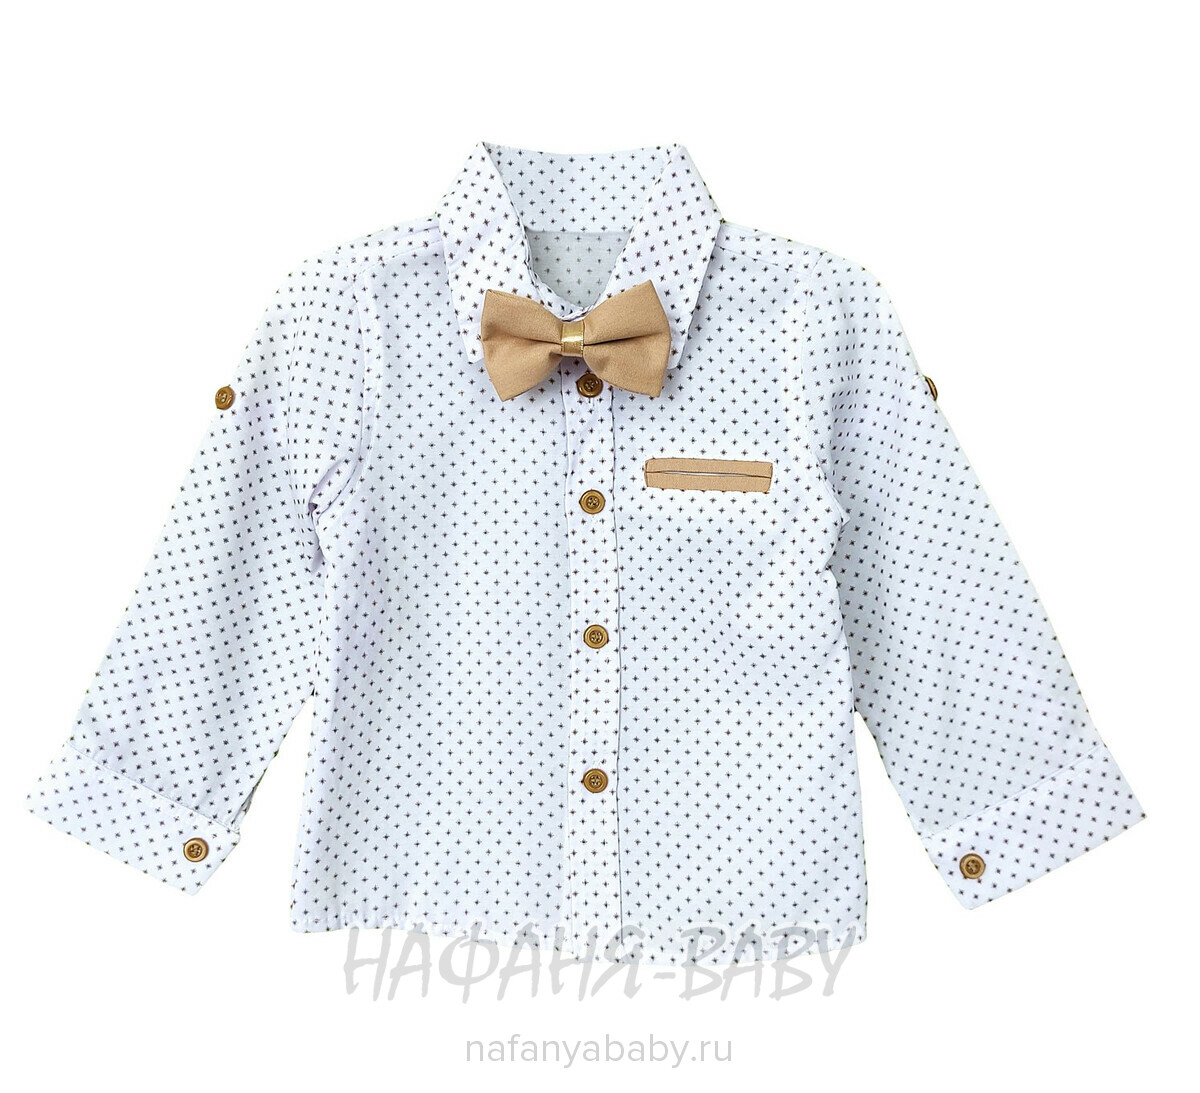 Детский костюм (рубашка + брюки) EFBEY арт. 3087, 1-4 года, цвет белый с бежевым, оптом Турция